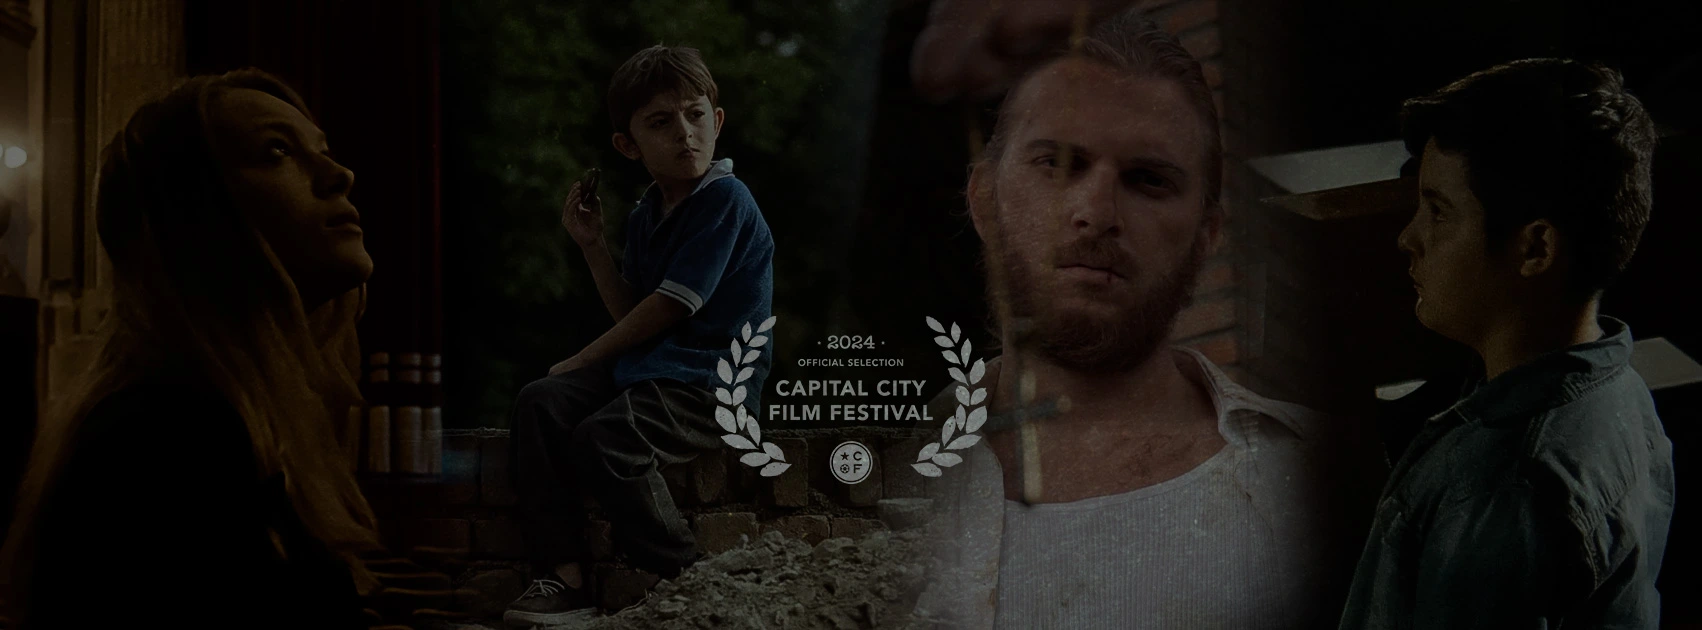 Quattro corti della distribuzione Alpha Film sono in concorso al Capital City Film Festival